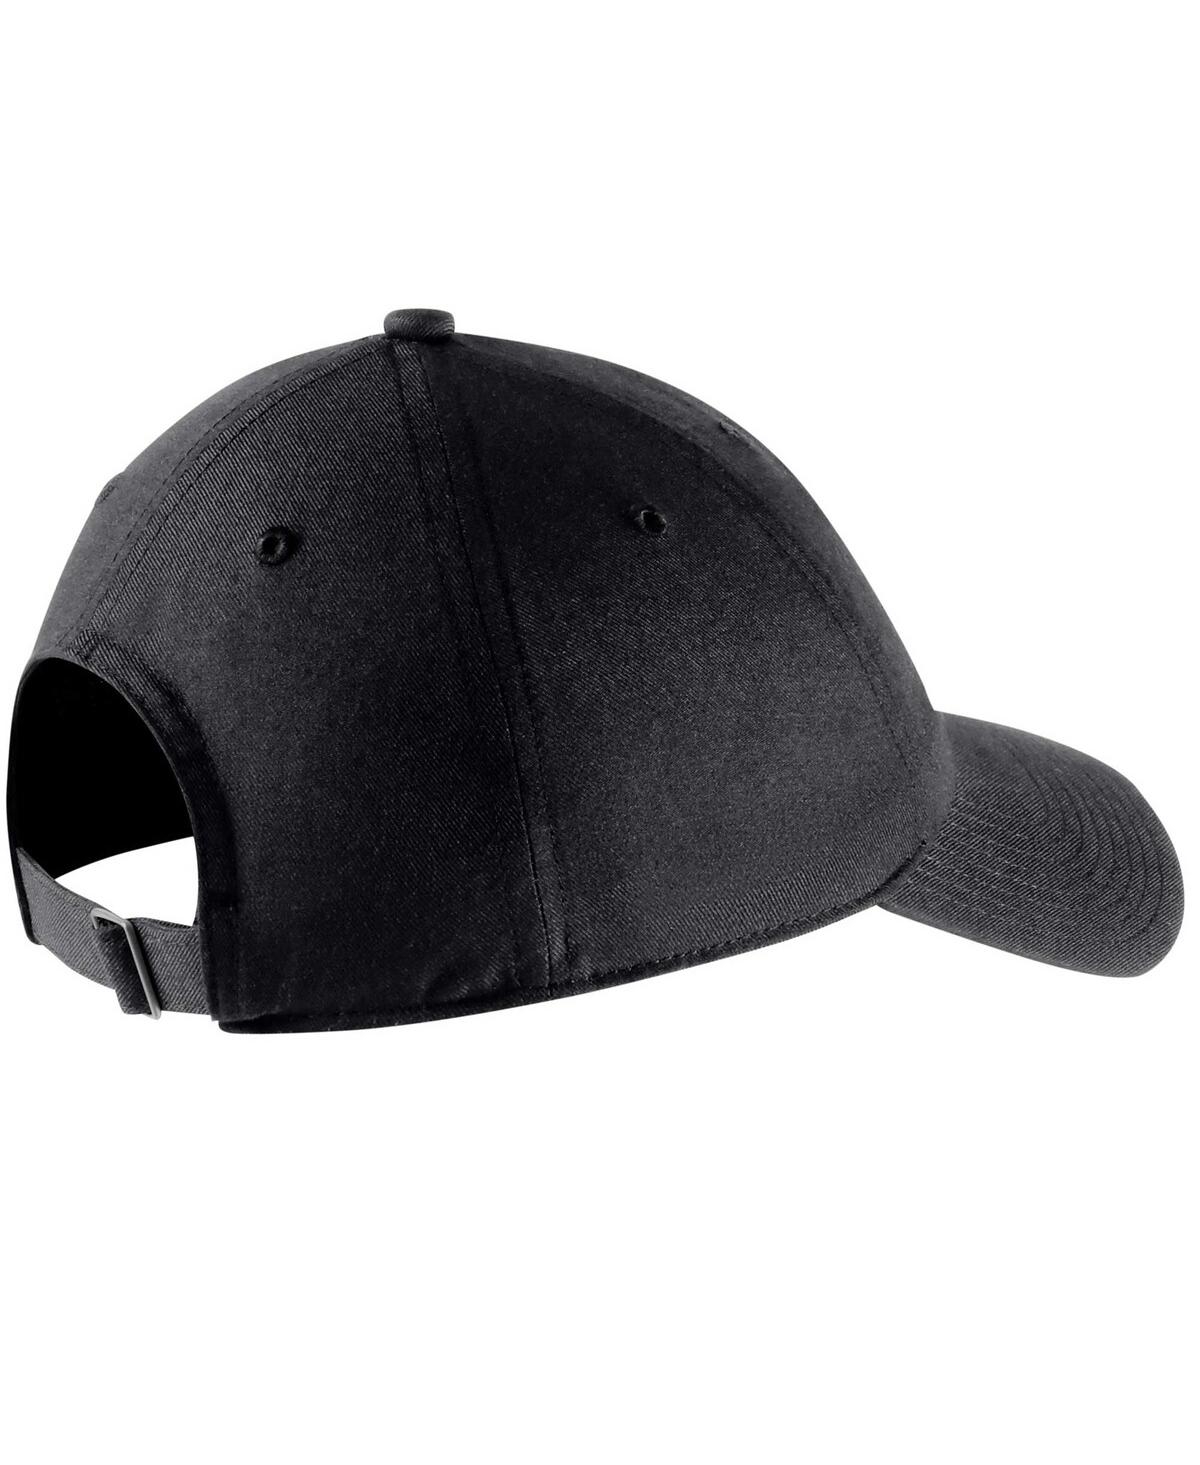 Shop Nike Men's  Black England National Team Campus Adjustable Hat